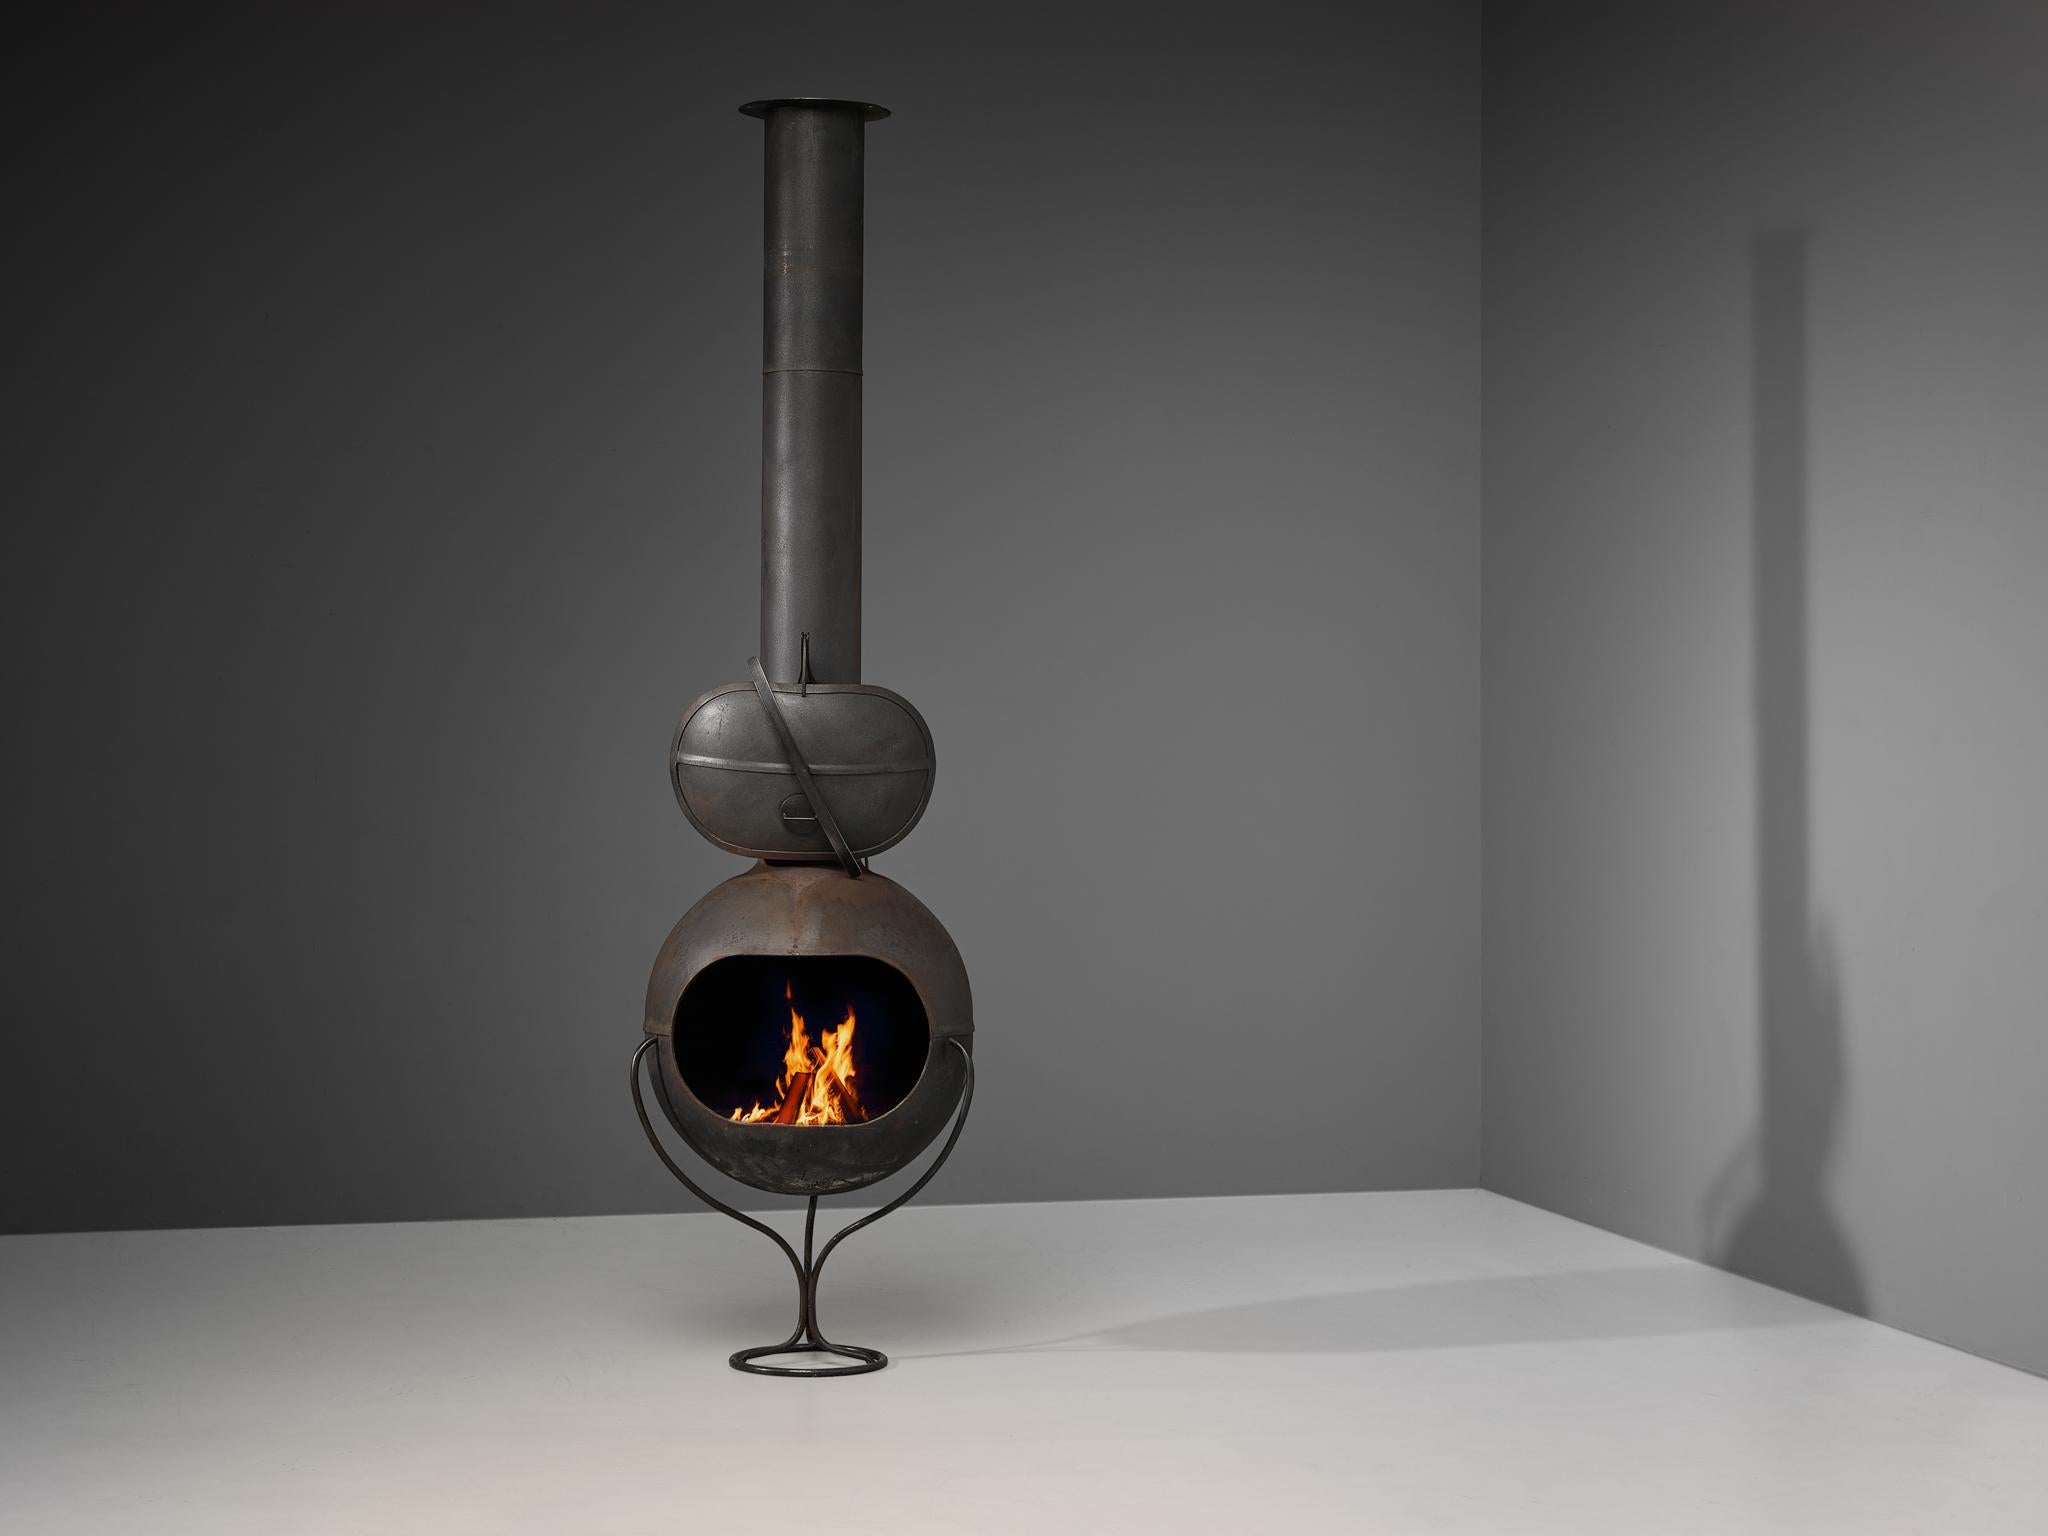 Feuerstelle, Stahlblech, Frankreich, 1960er Jahre.

Ein gut gestalteter Kamin aus schwarz beschichtetem Stahl, der entweder das Herzstück oder den Mittelpunkt einer Einrichtung bildet. Die gesamte Konstruktion basiert auf einer Kugelform, die mit